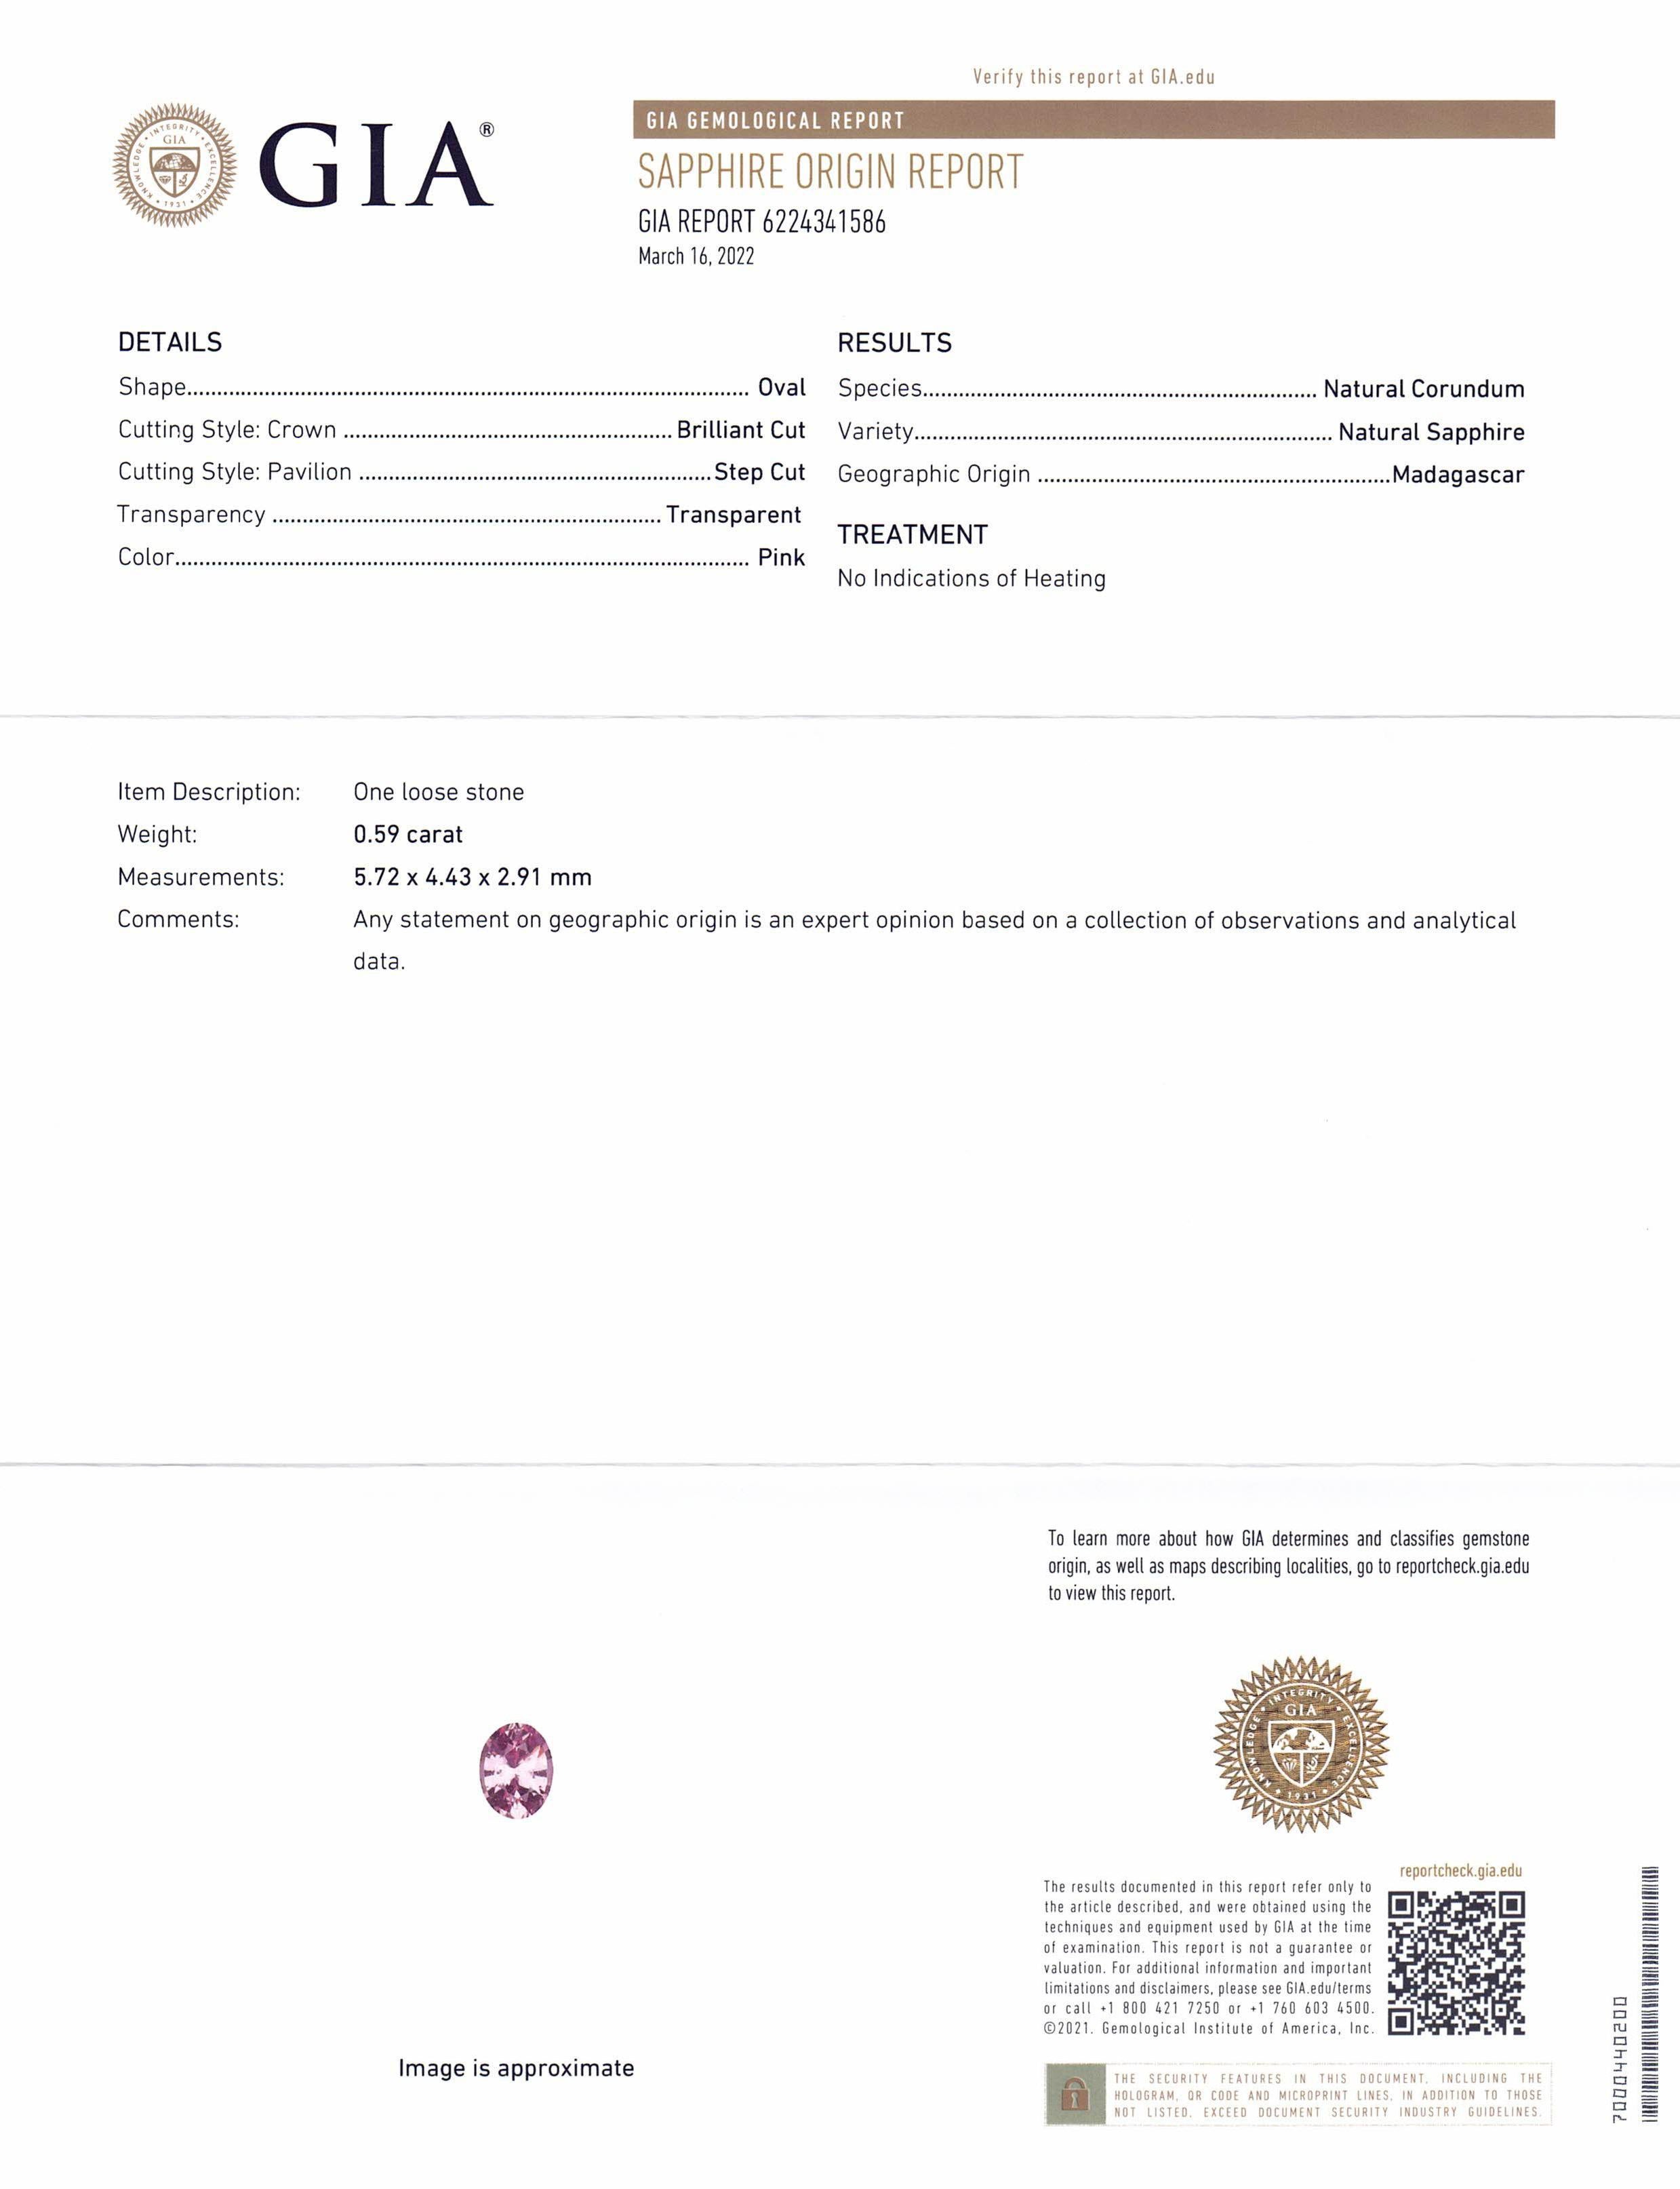 Saphir rose ovale de 0,59 carat certifié GIA de Madagascar Neuf - En vente à Toronto, Ontario